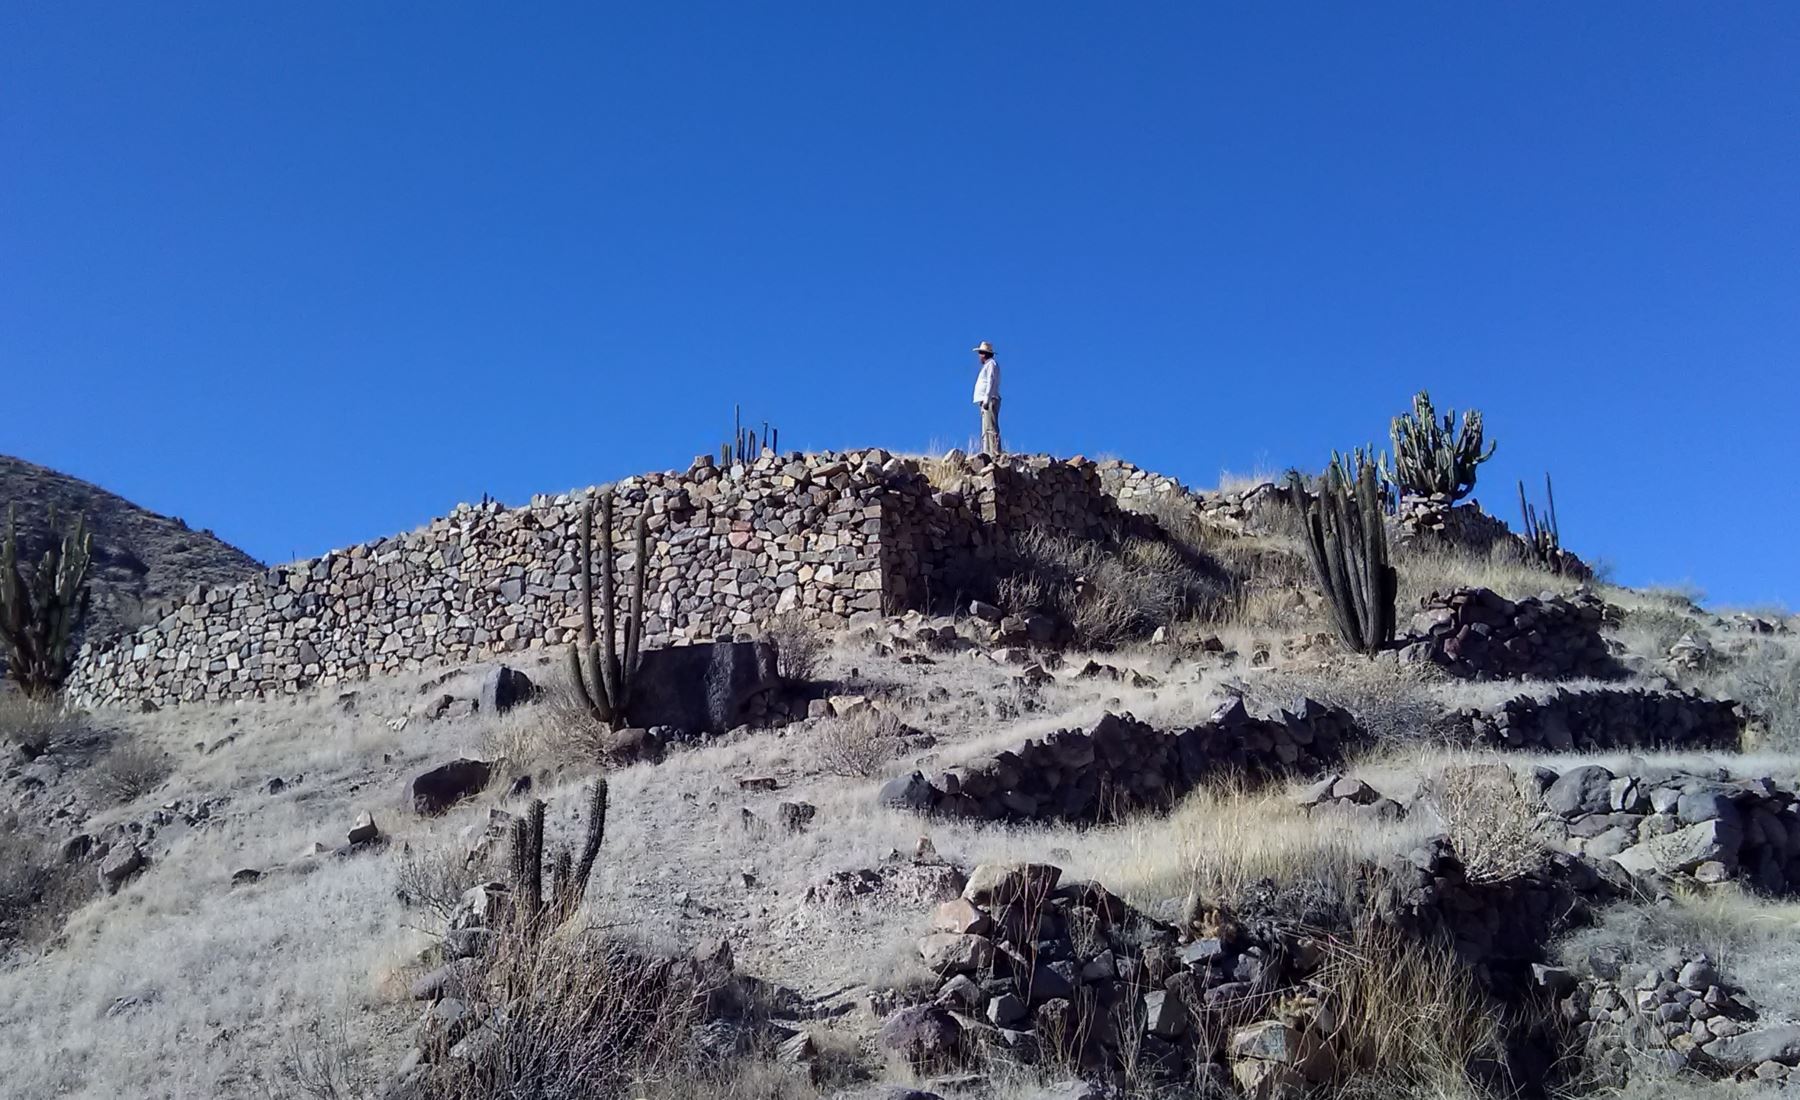 La erupción del volcán Huaynaputina, en febrero de 1600 después de Cristo, destruyó la ciudadela inca de Estagagache, ubicada en la sureña región de Moquegua. Foto: ANDINA/Ingemmet